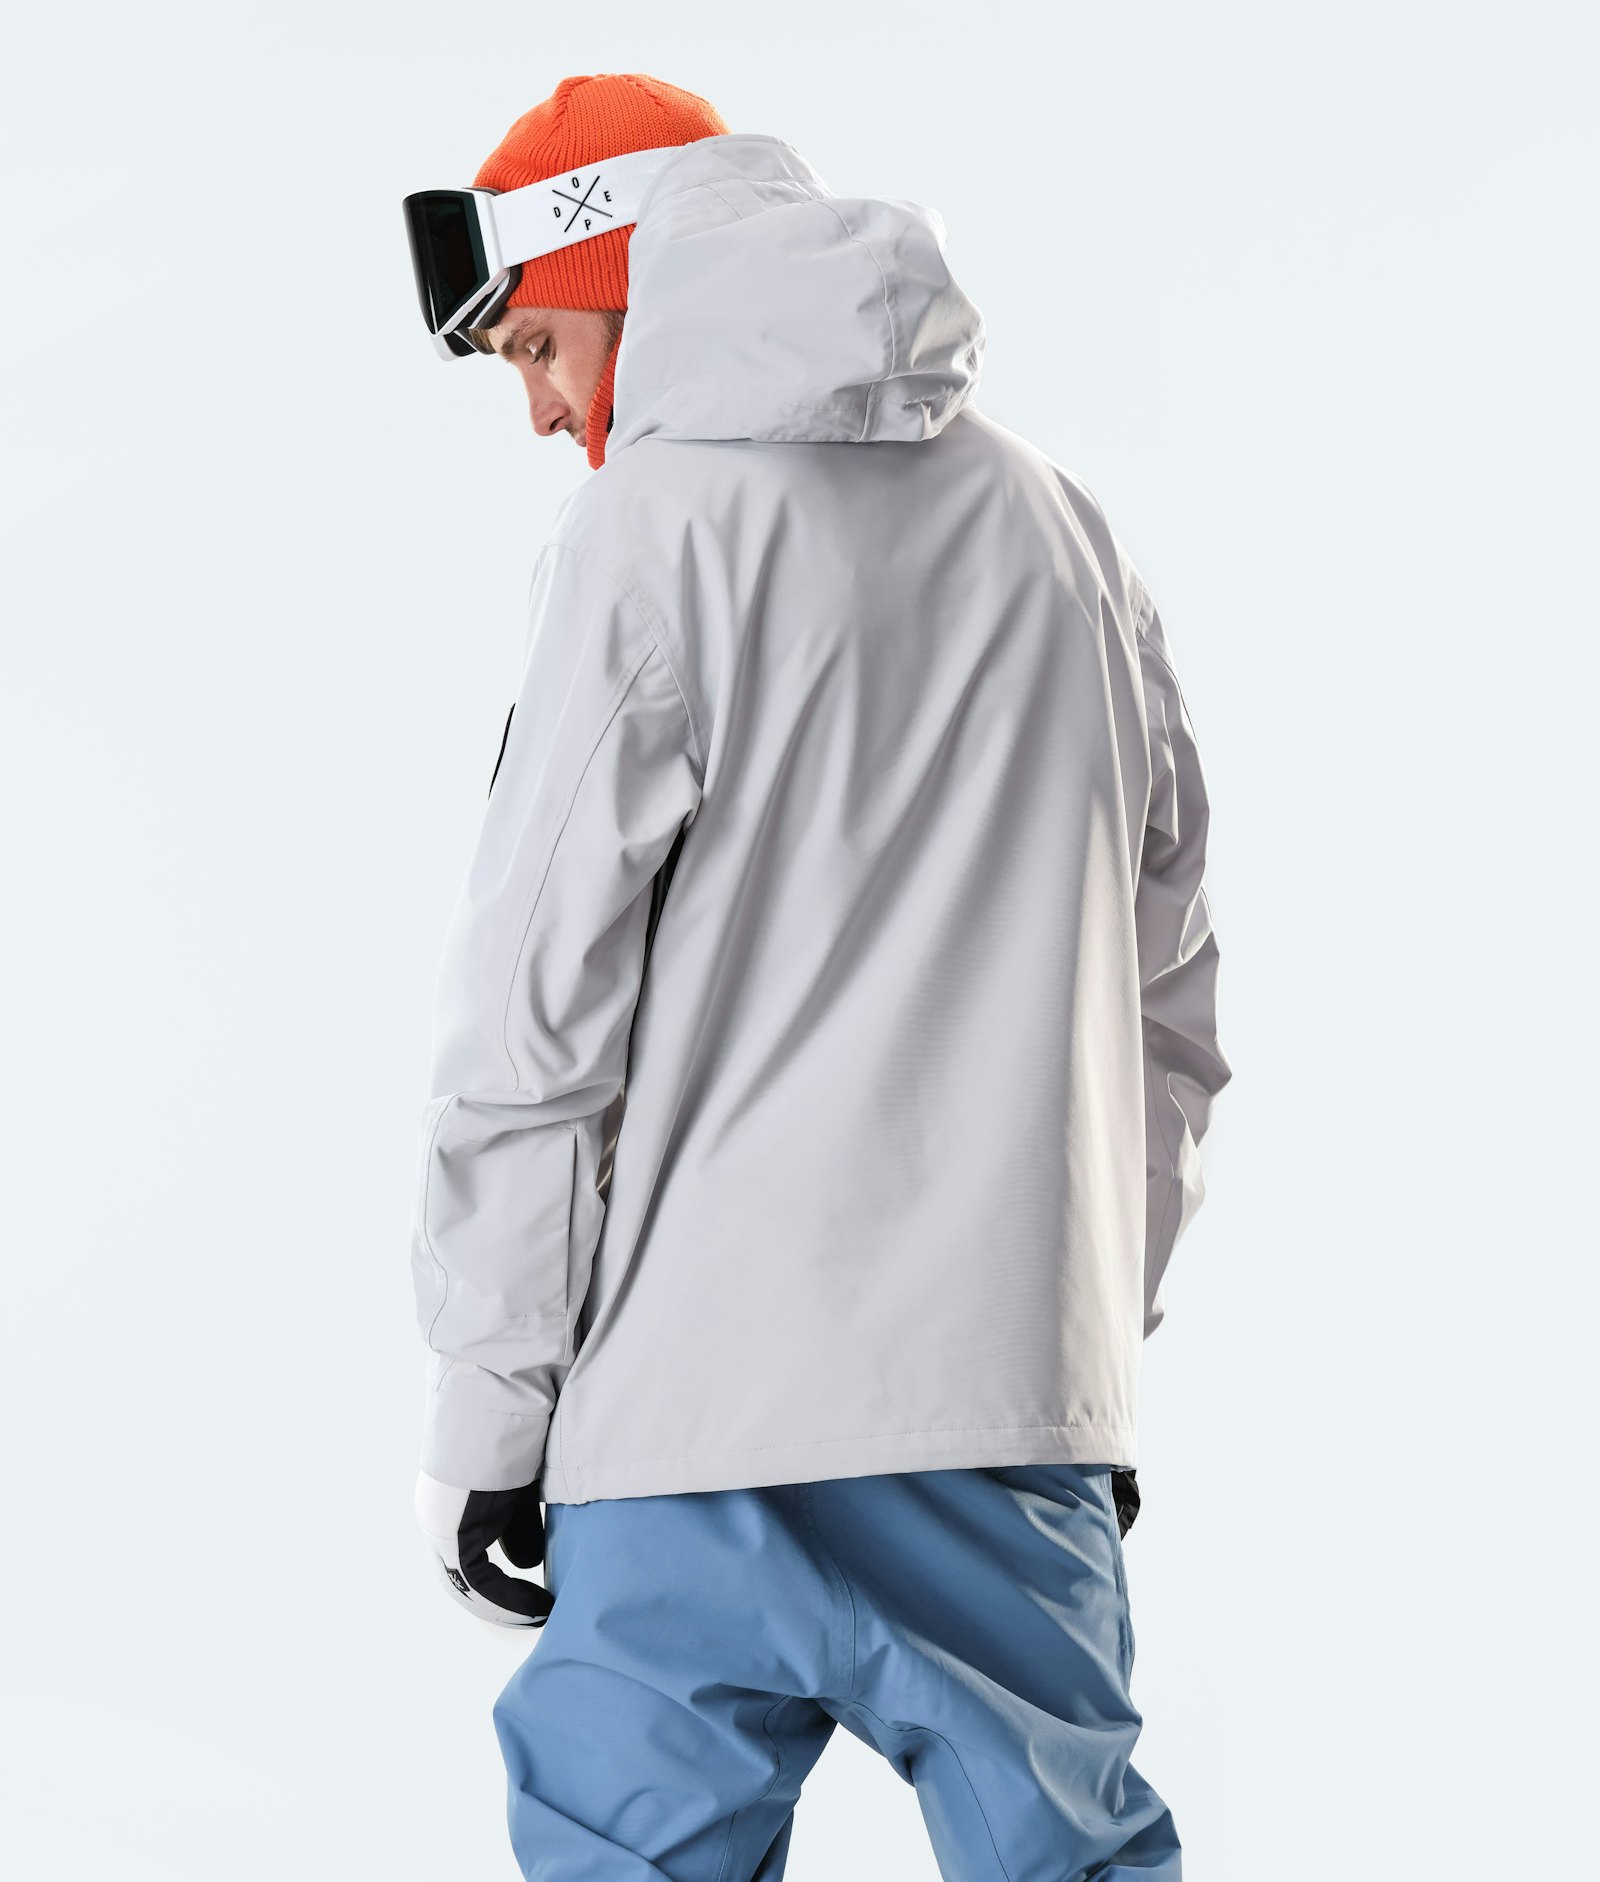 Blizzard 2020 Giacca Snowboard Uomo Light Grey